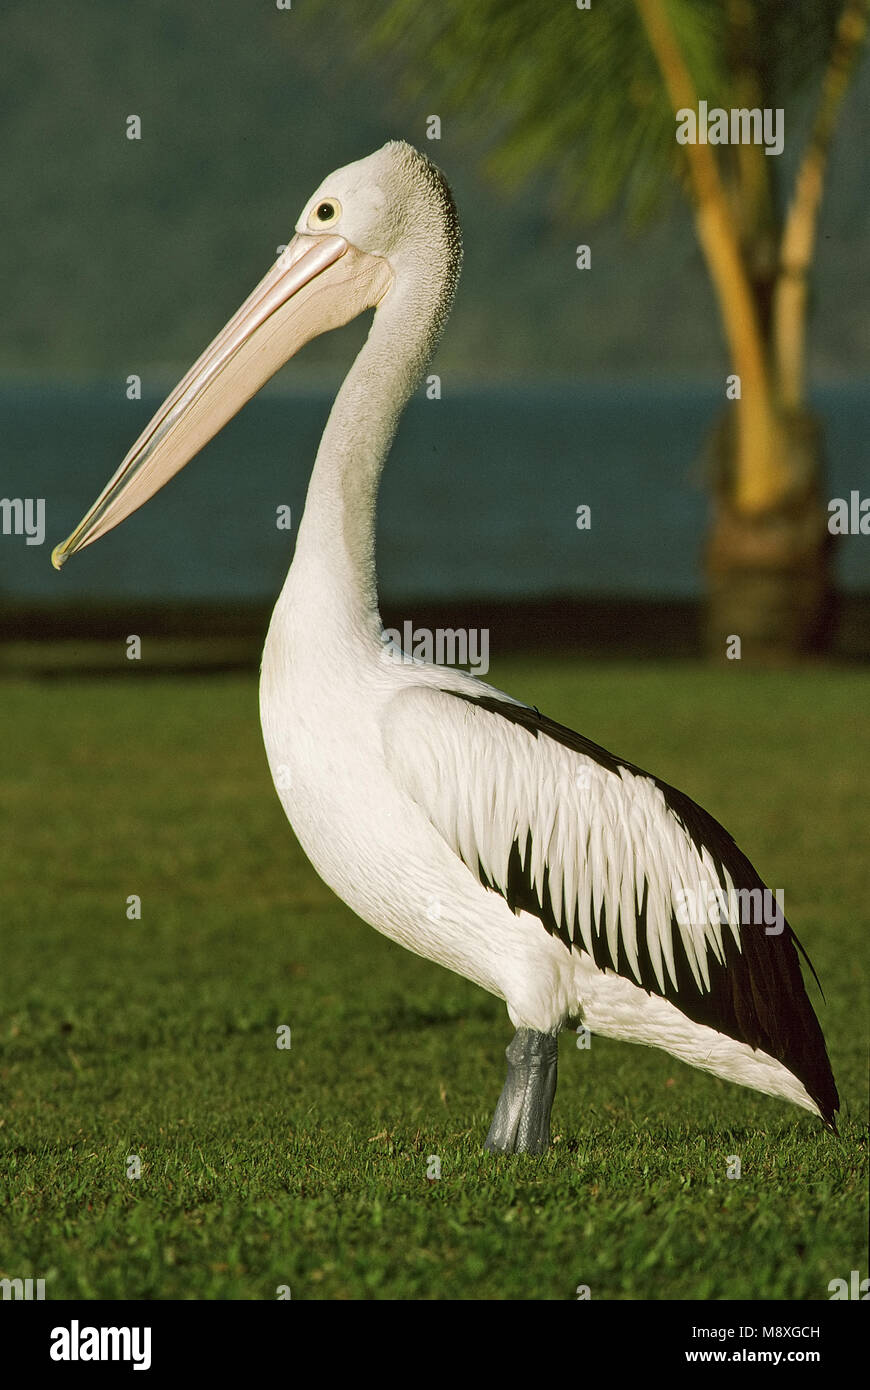 Australian Pelican standing; Brilpelikaan staand Stock Photo